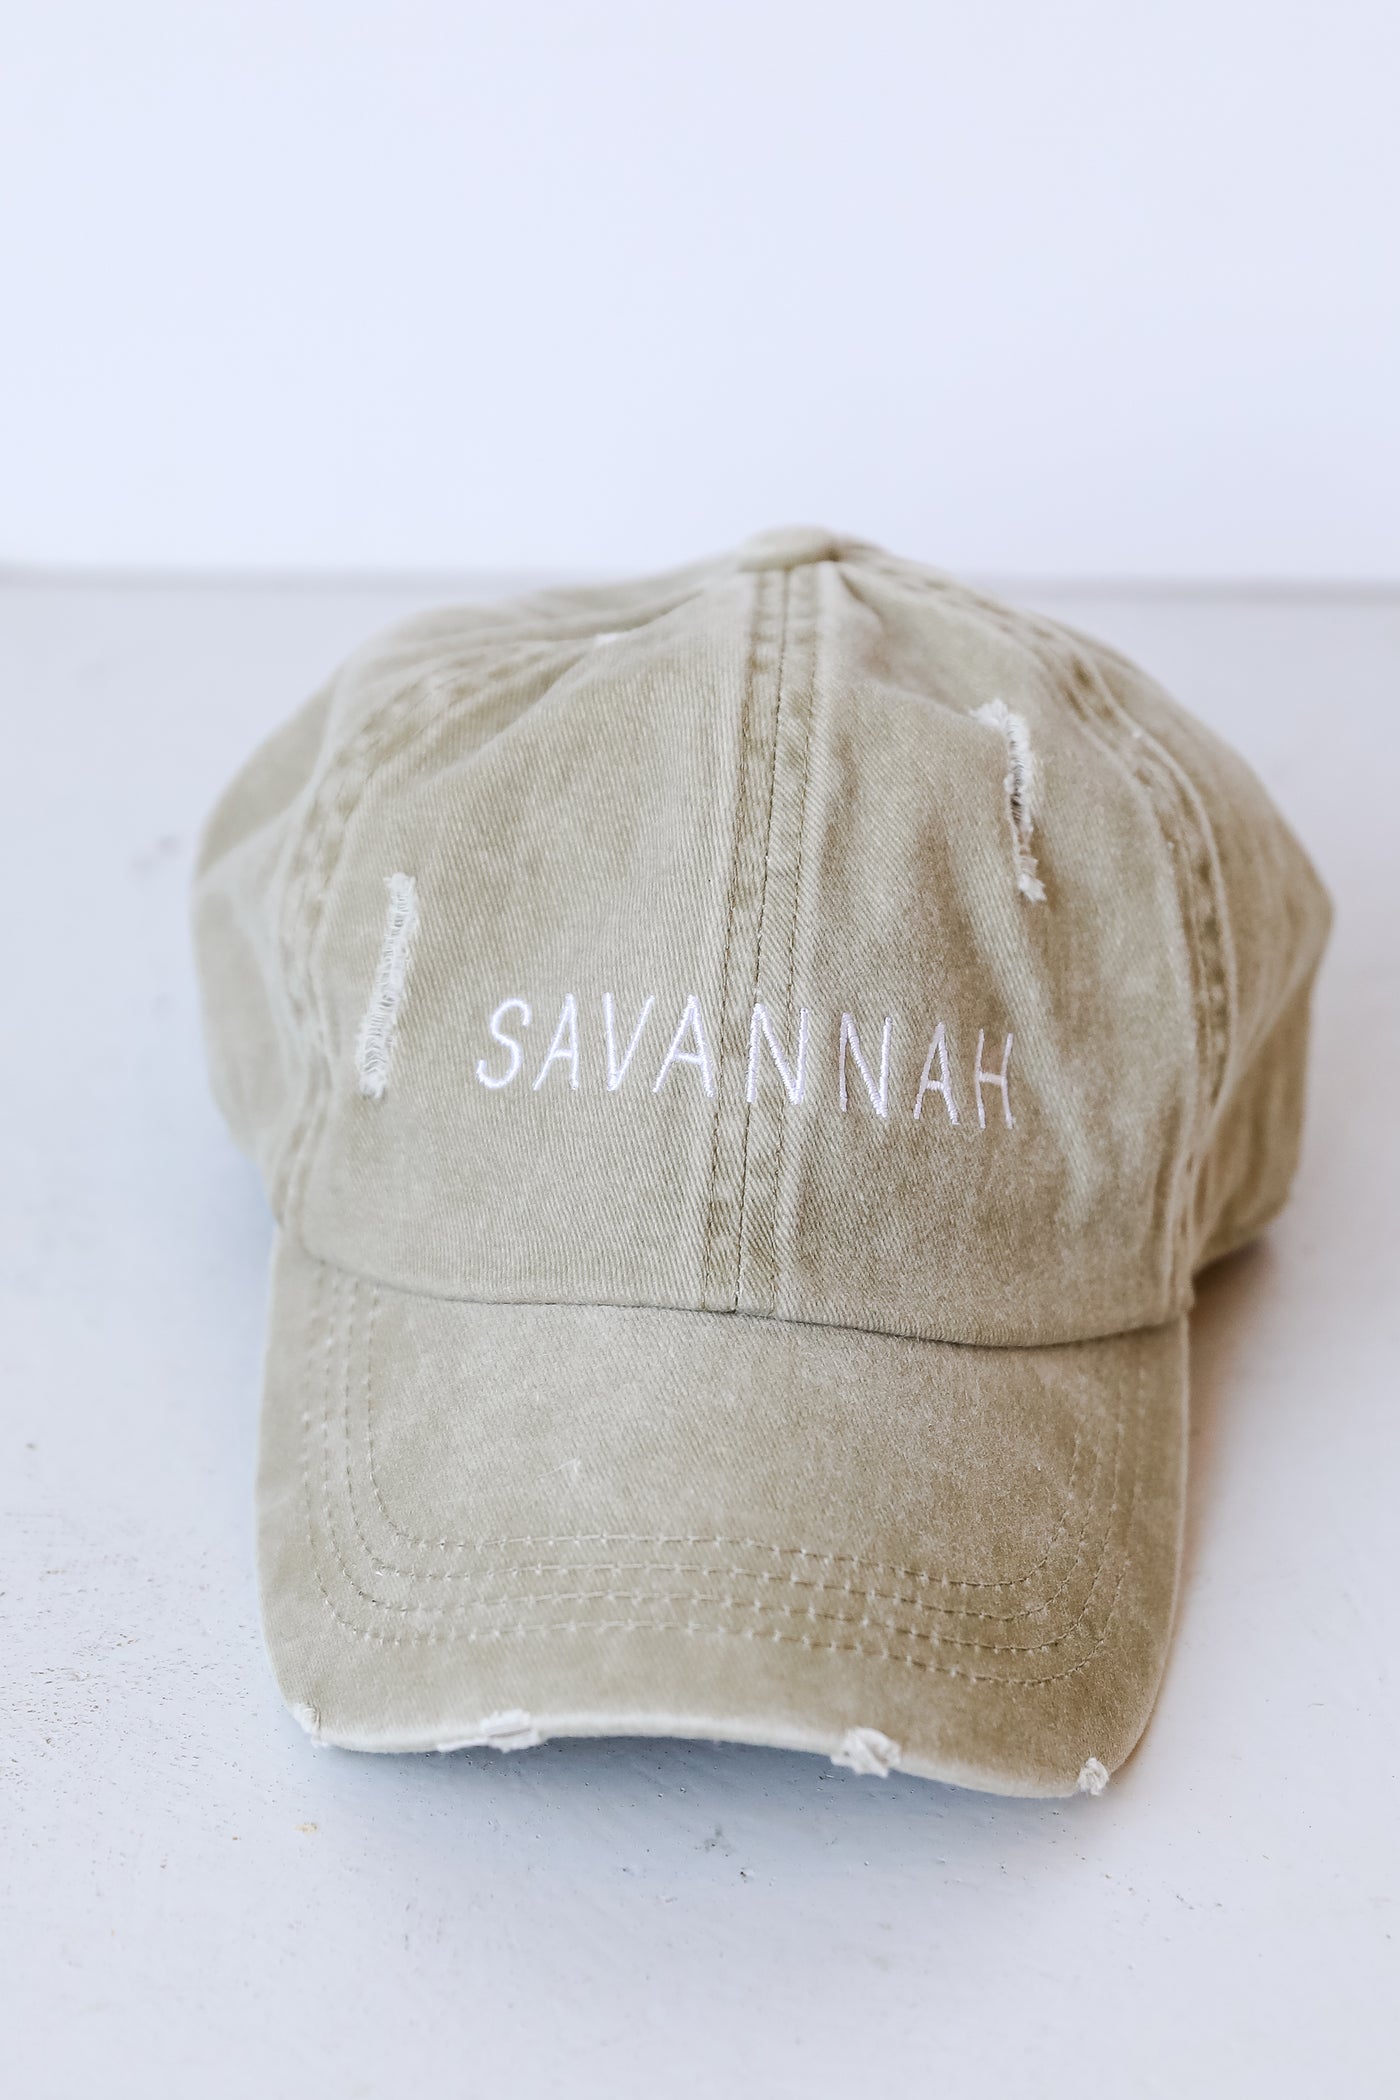 Savannah Vintage Embroidered Hat flat lay